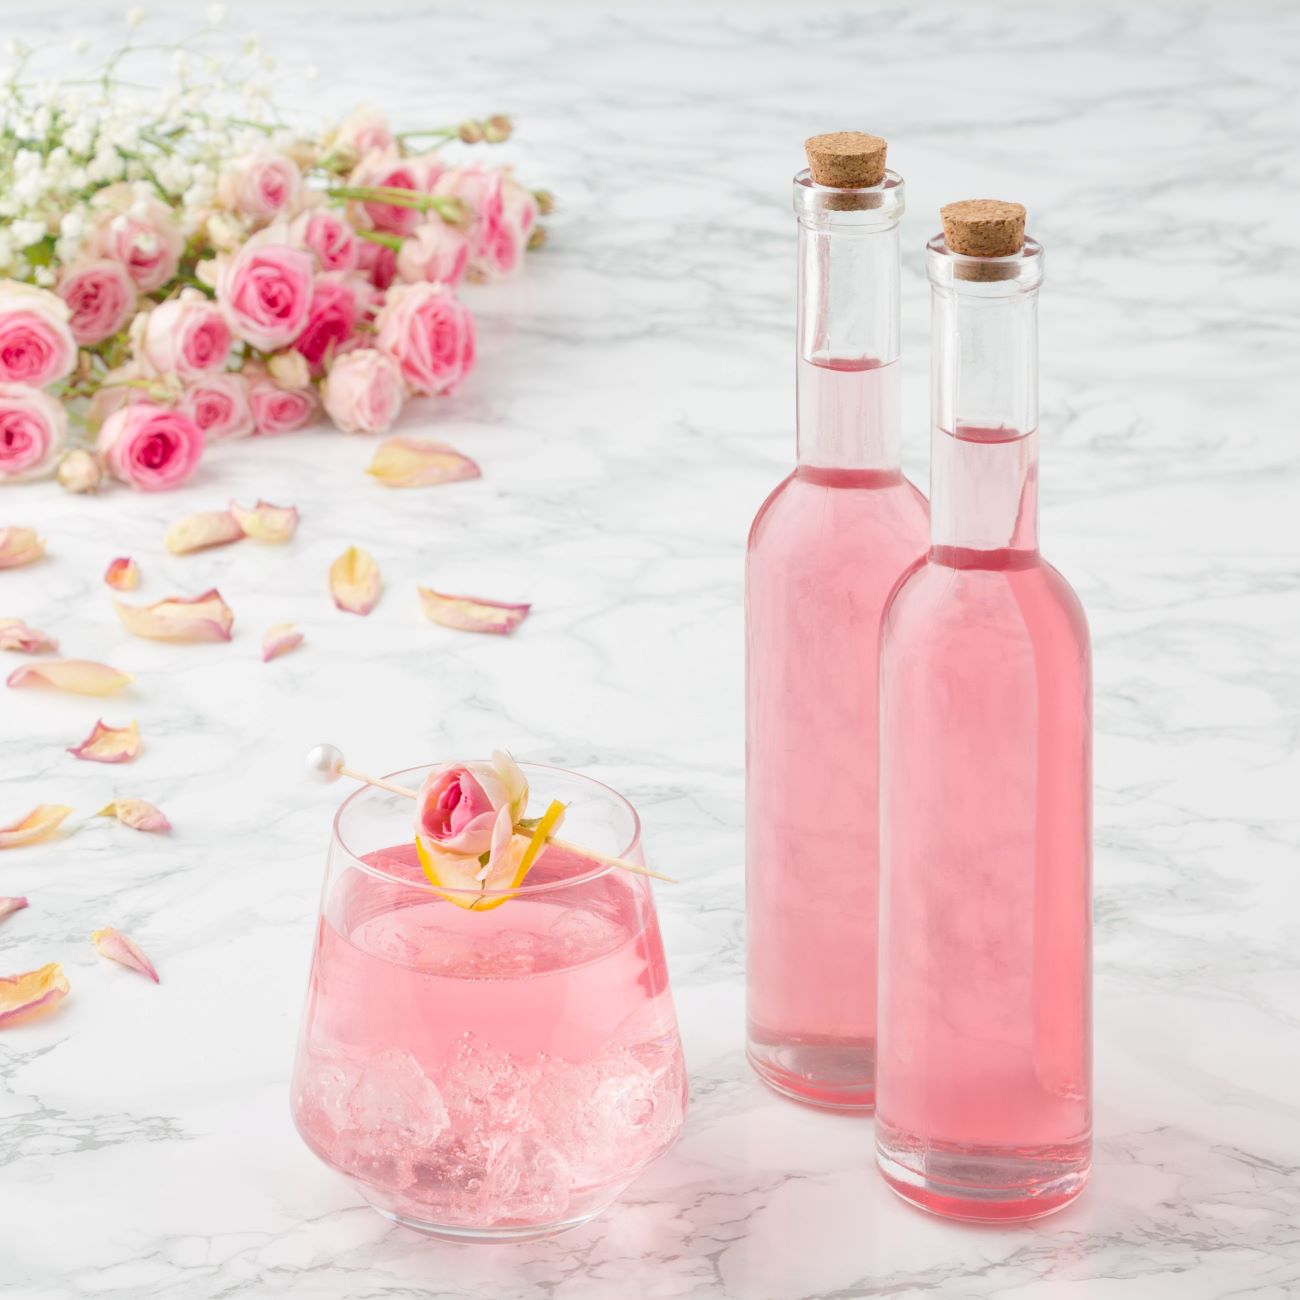 A rózsaszirupot két kis üvegben és egy pohárban jégkockákkal tálalják.